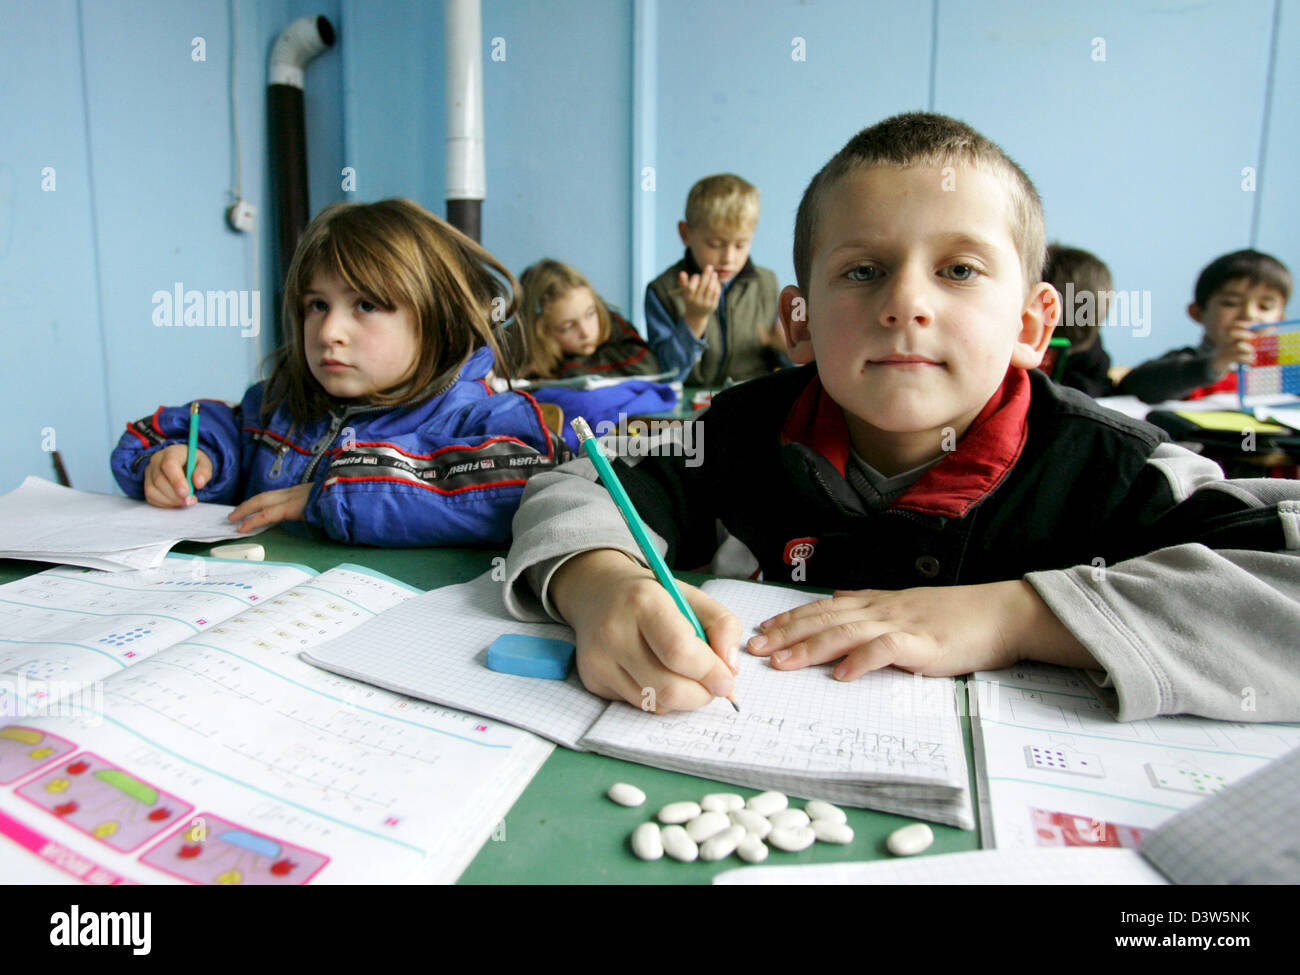 Das Bild zeigt die Schülerinnen und Schüler in einem Klassenzimmer einer Schule in Nebregoste, Republik Serbien, Mittwoch, 13. Dezember 2006. Nebregoste liegt im südlichen Teil von Serbien in die Provinz Kosovo. Die Provinz richtet sich nach der Mission der Vereinten Nationen im Kosovo (UNMIK) und der vorläufigen Institutionen der Selbstverwaltung, mit Sicherheit zur Verfügung gestellt von der NATO geführte KFOR (Kosovo Force). Almos Stockfoto